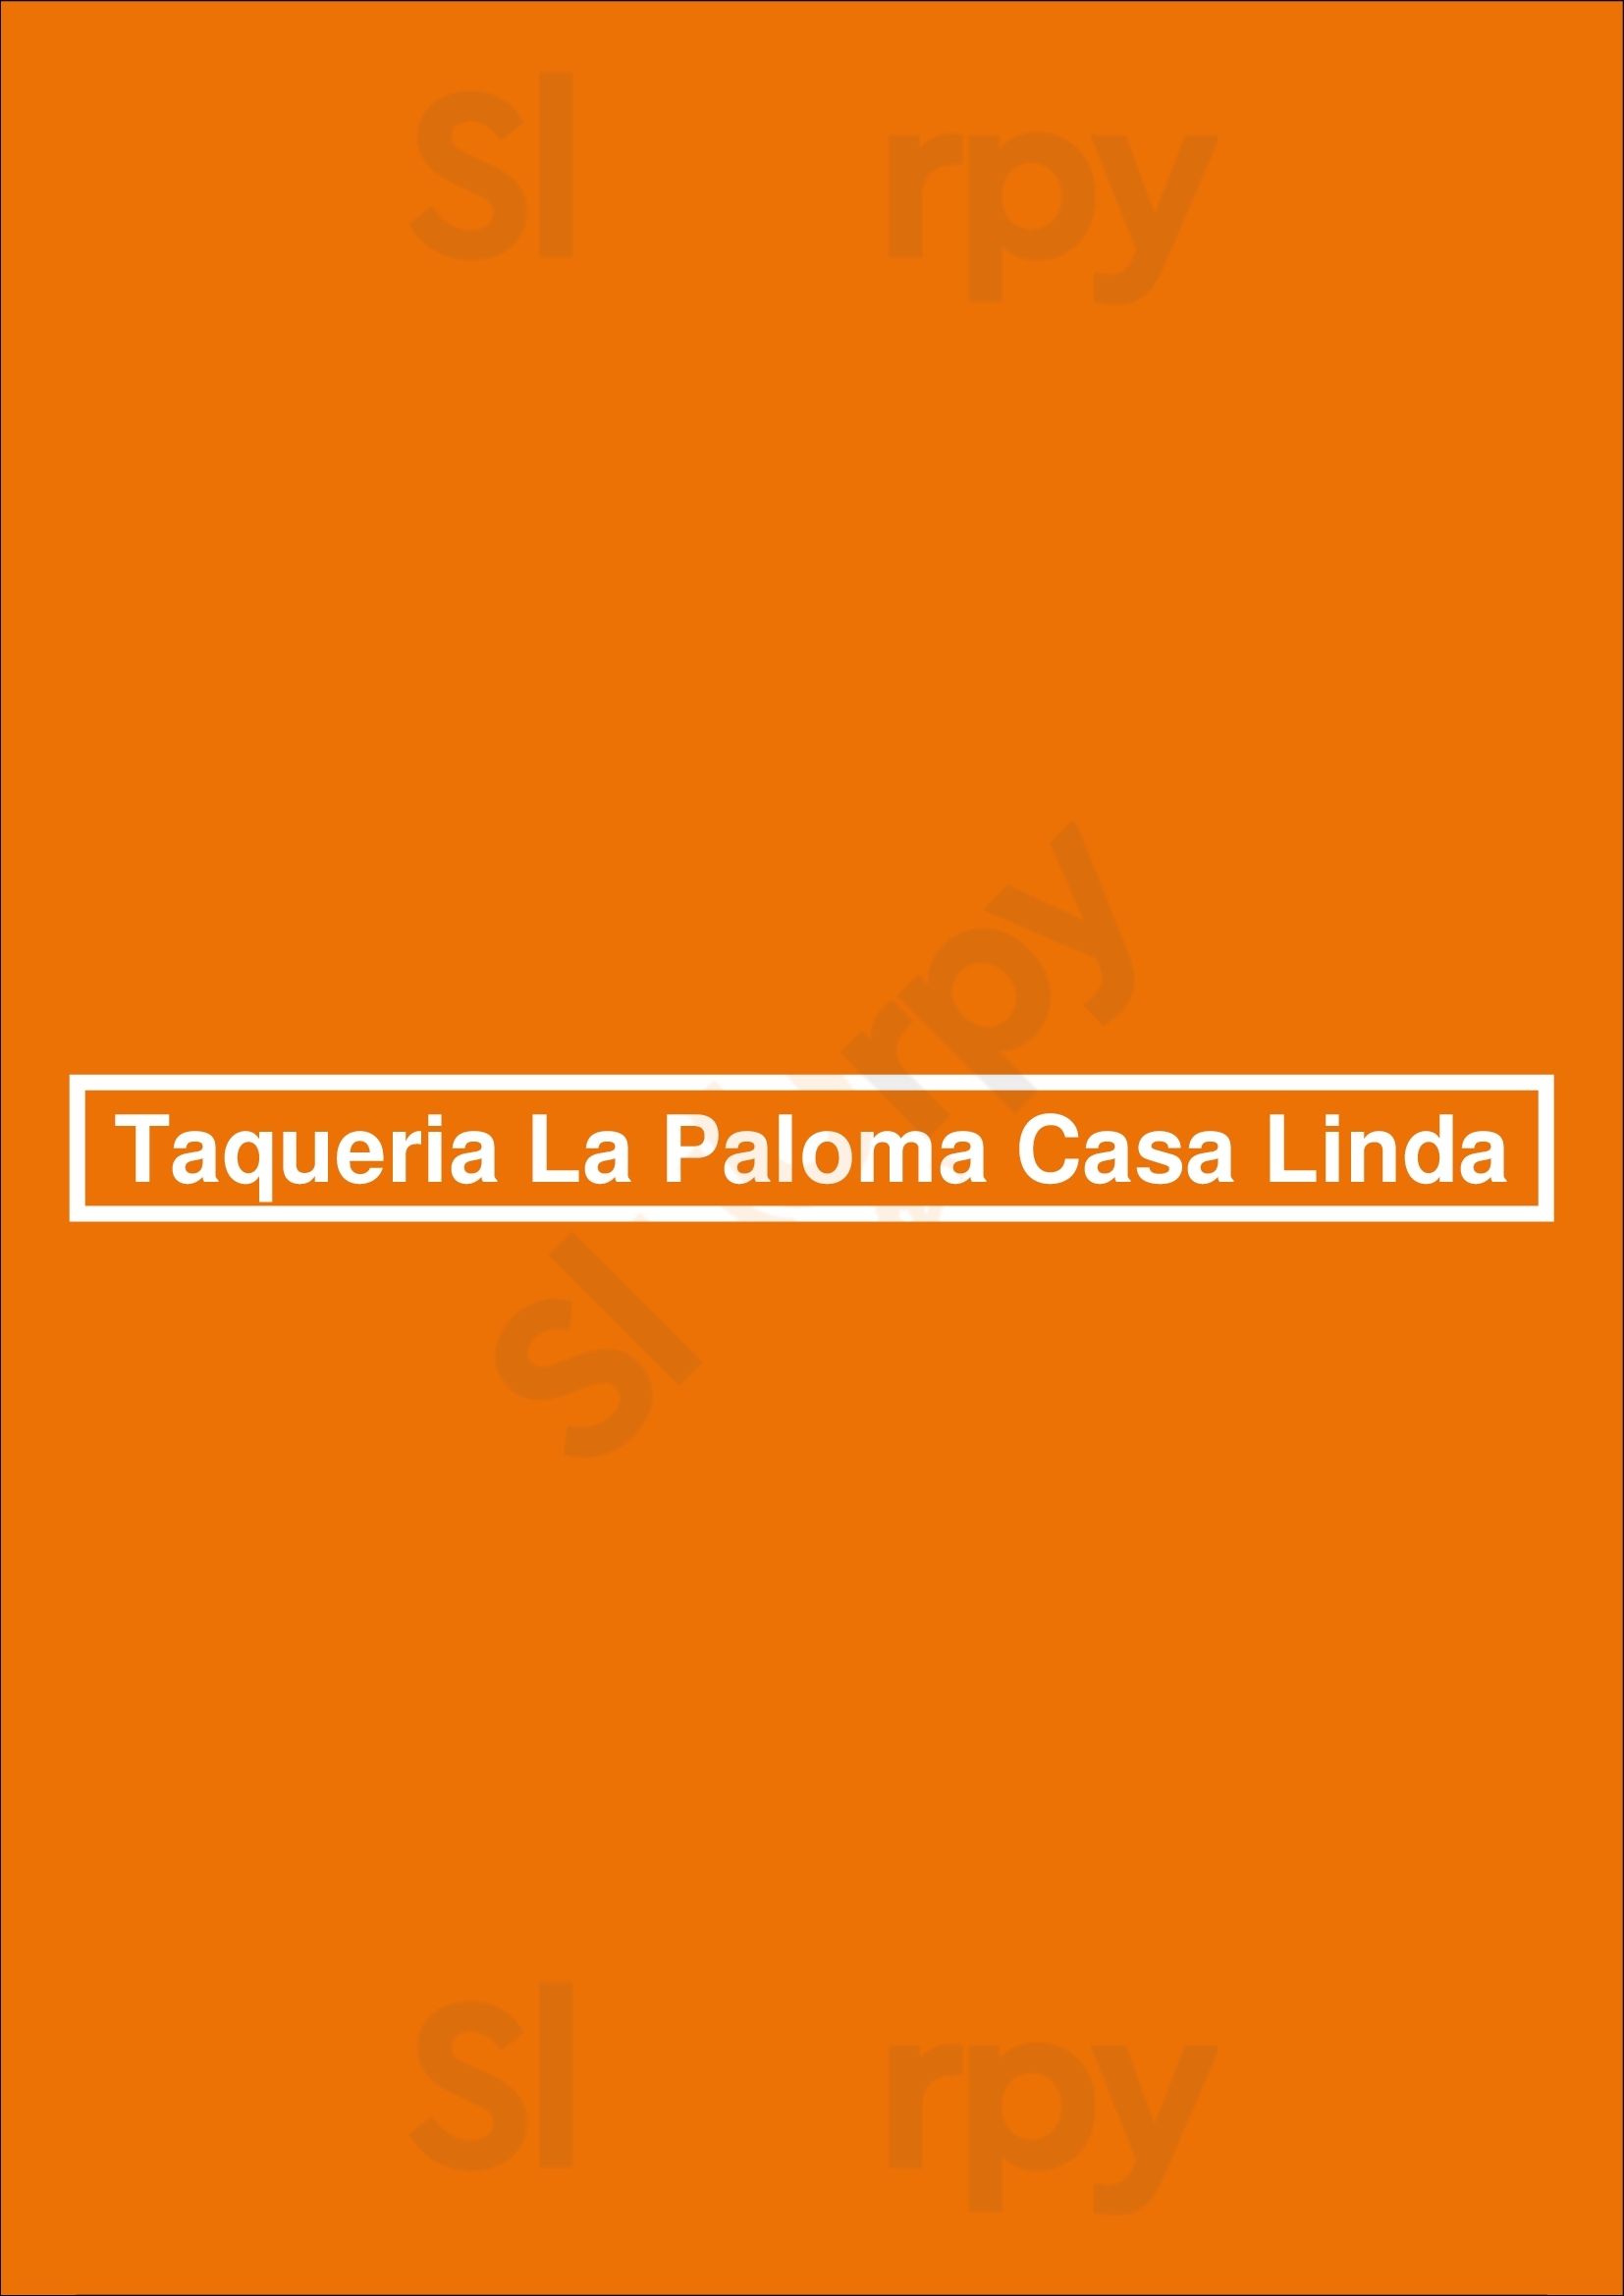 Taqueria La Paloma Casa Linda Dallas Menu - 1